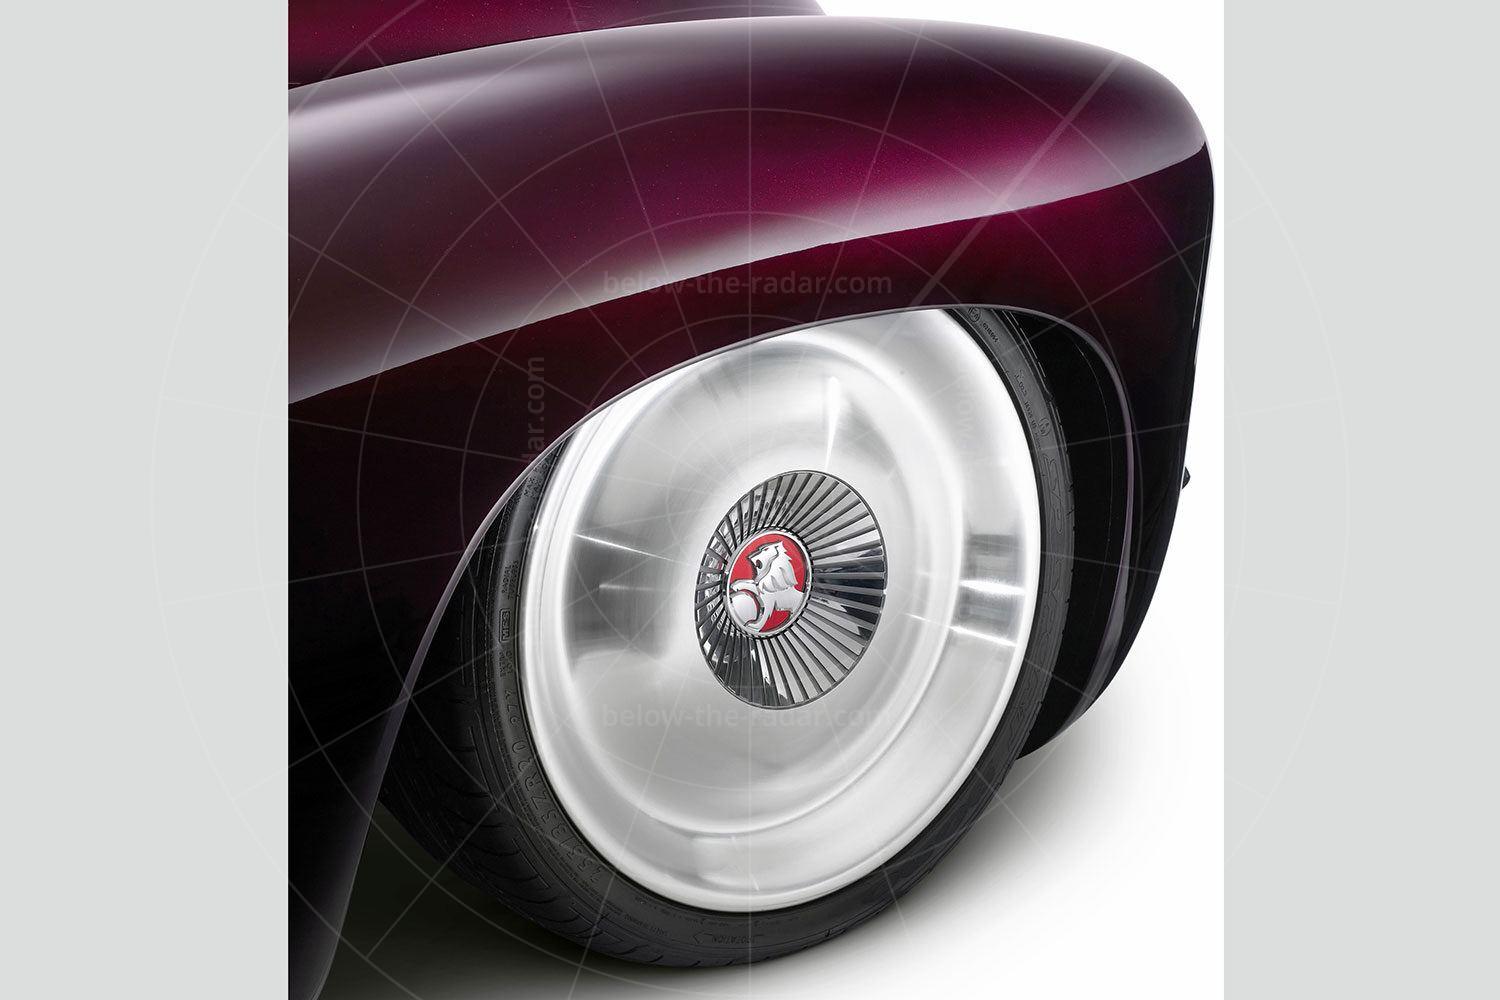 Holden Efijy alloy wheel Pic: Holden | Holden Efijy alloy wheel